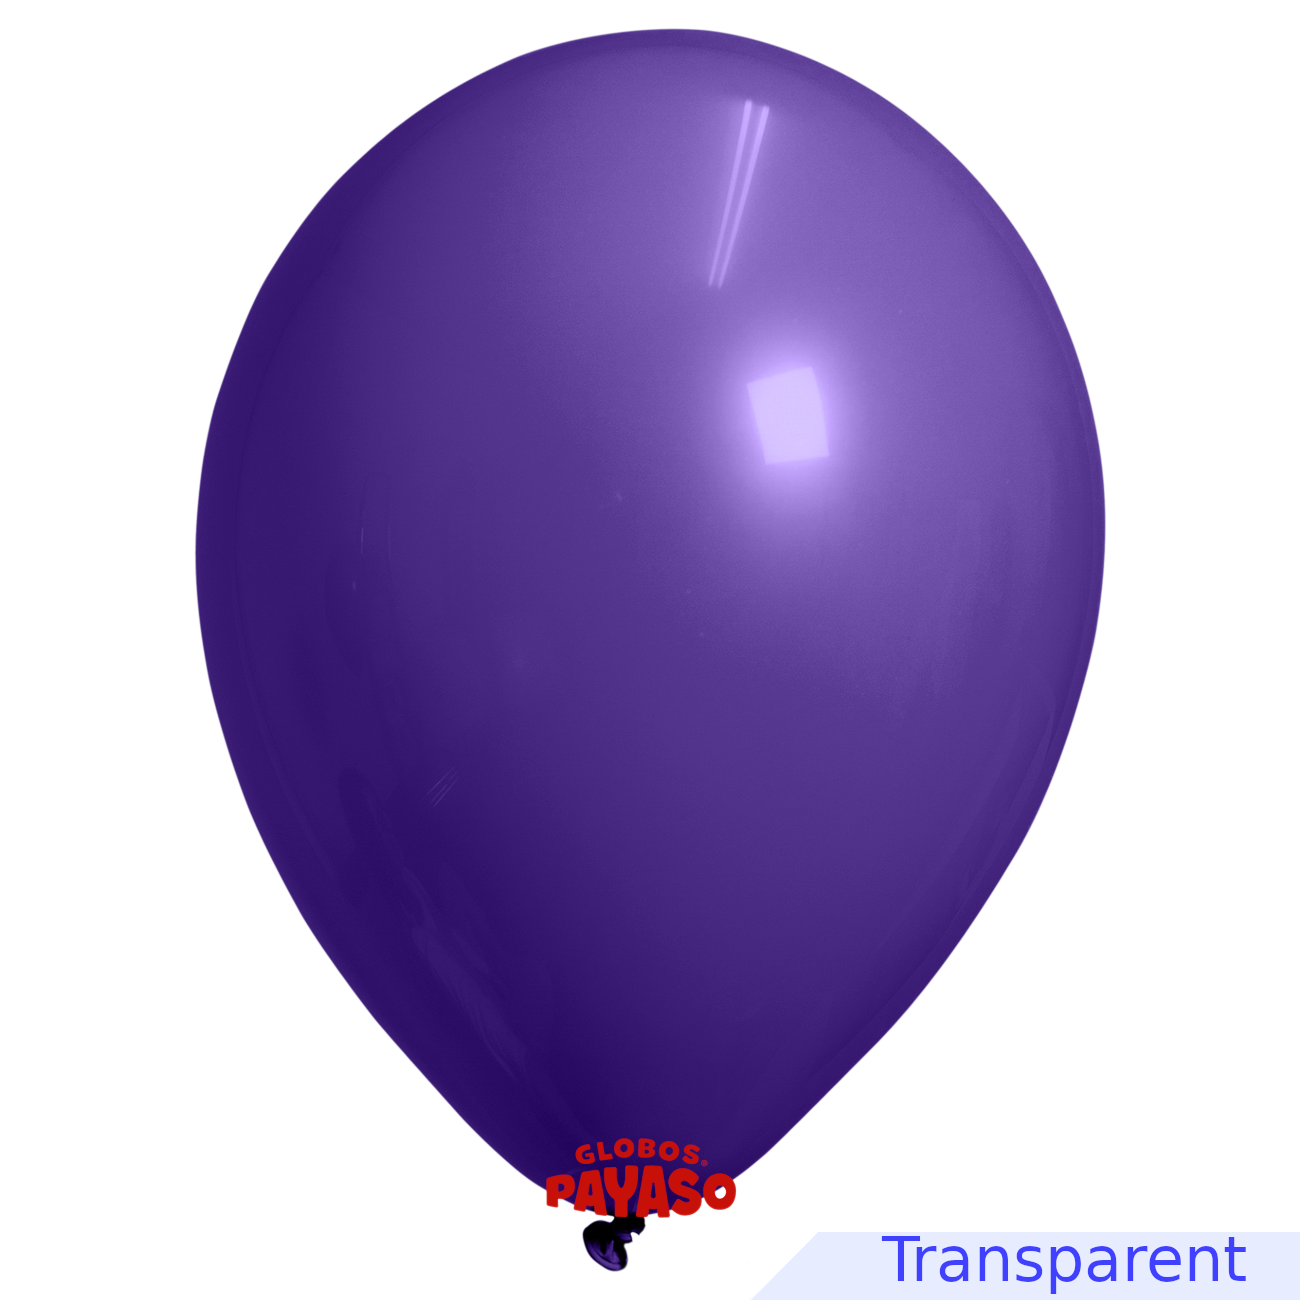 Globos Payaso / Unique 12" Pourpre Translucide Décorateur Ballon